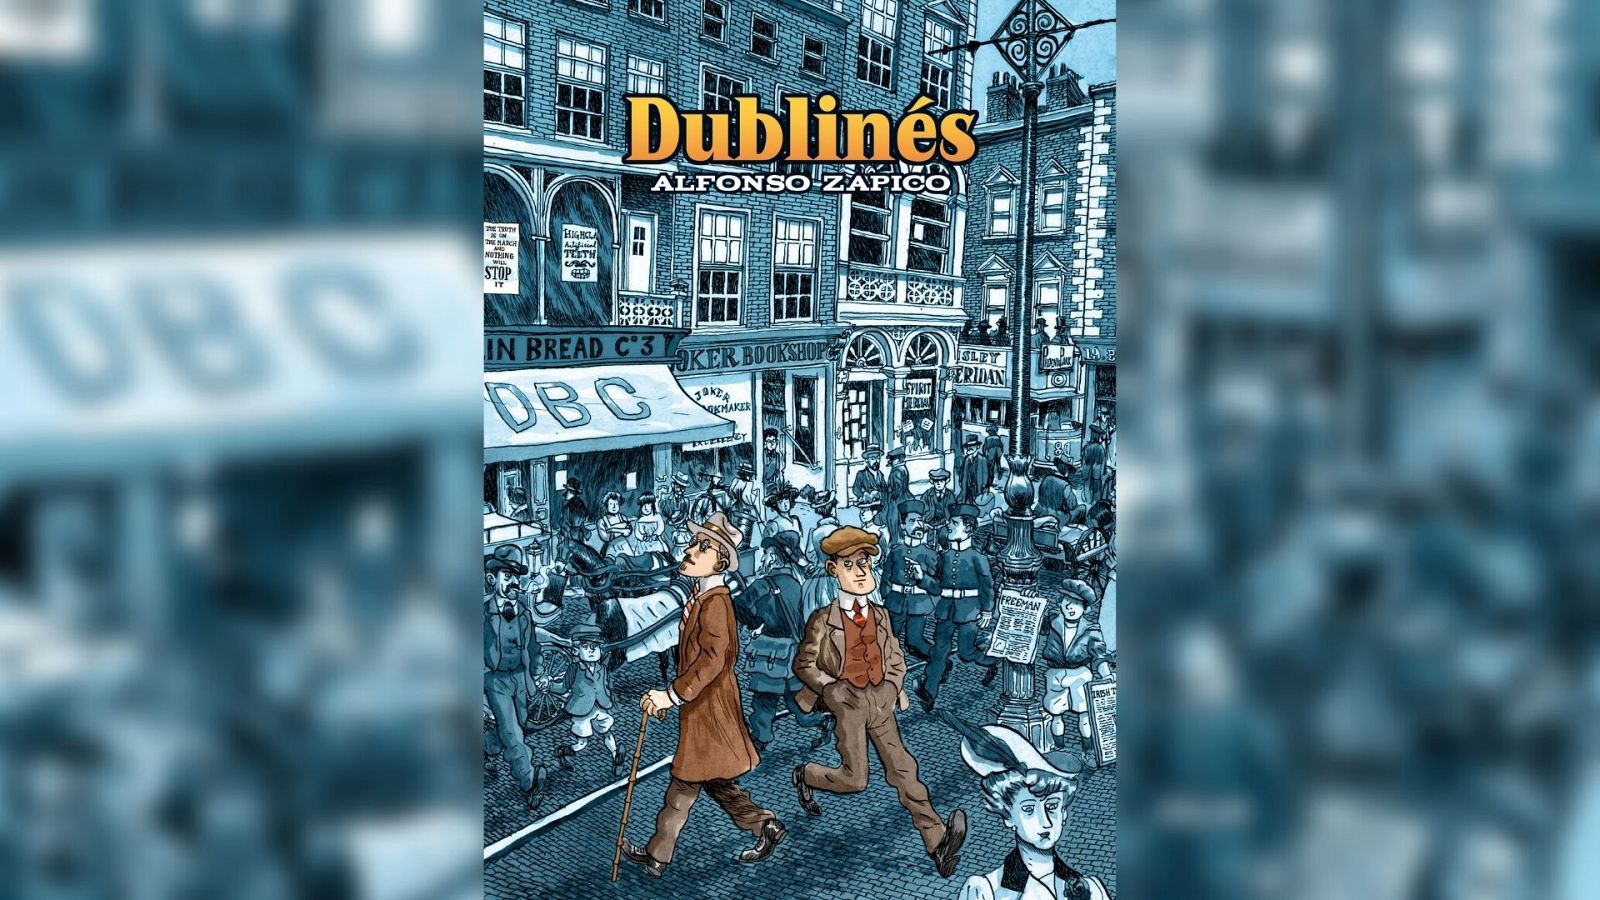 Asuntos propios - Alfonso Zapico repasa la vida de James Joyce en un cómic llamado "Dublinés"